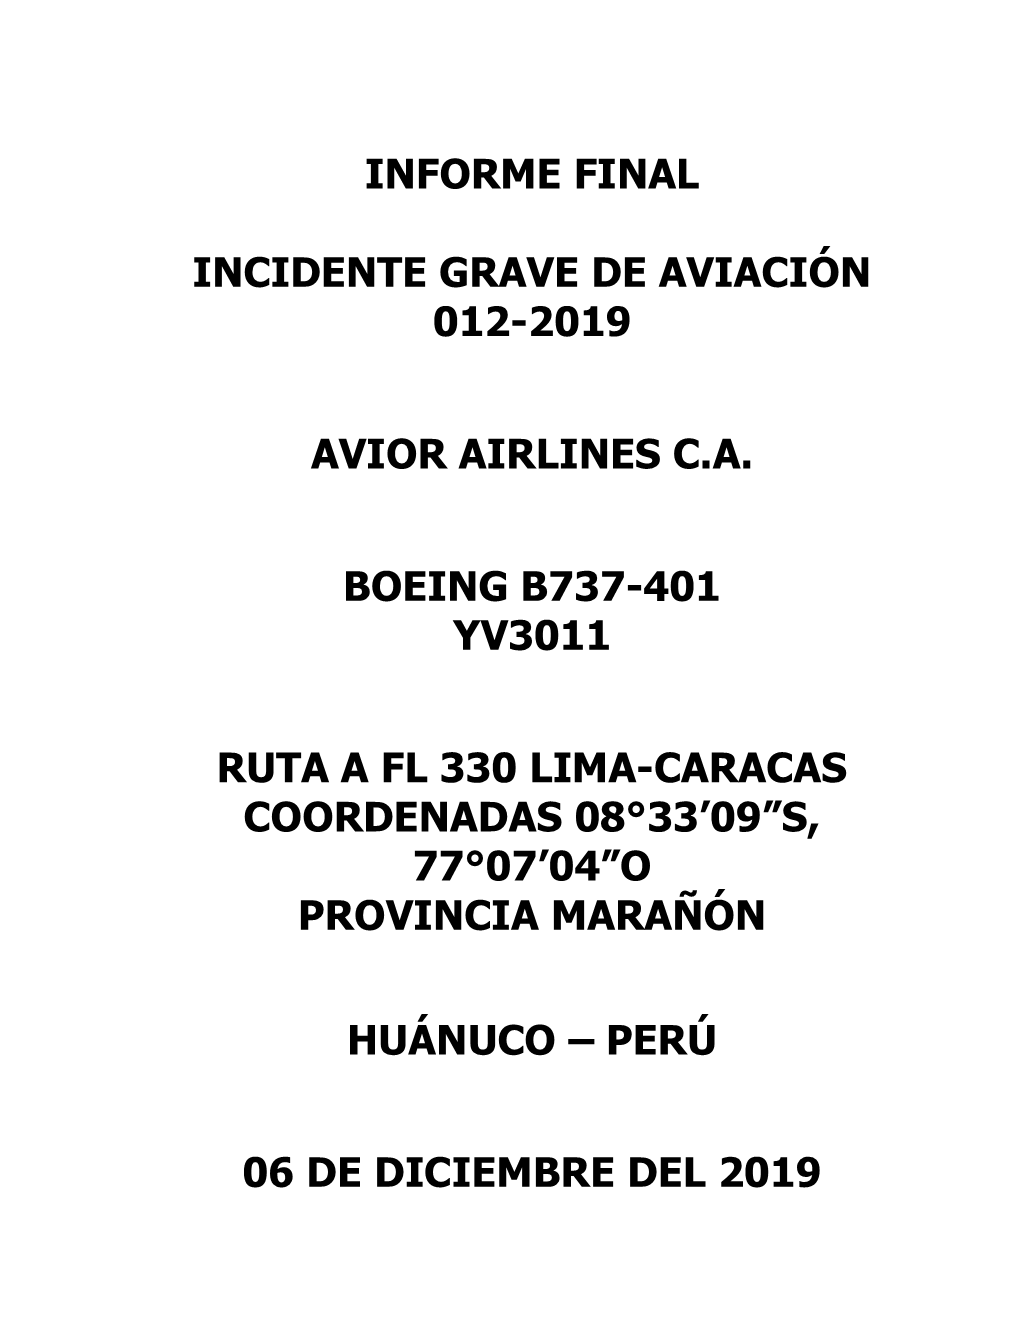 Informe Final Incidente Grave De Aviación 012-2019 Avior Airlines C.A. Boeing B737-401 Yv3011 Ruta a Fl 330 Lima-Caracas Coord